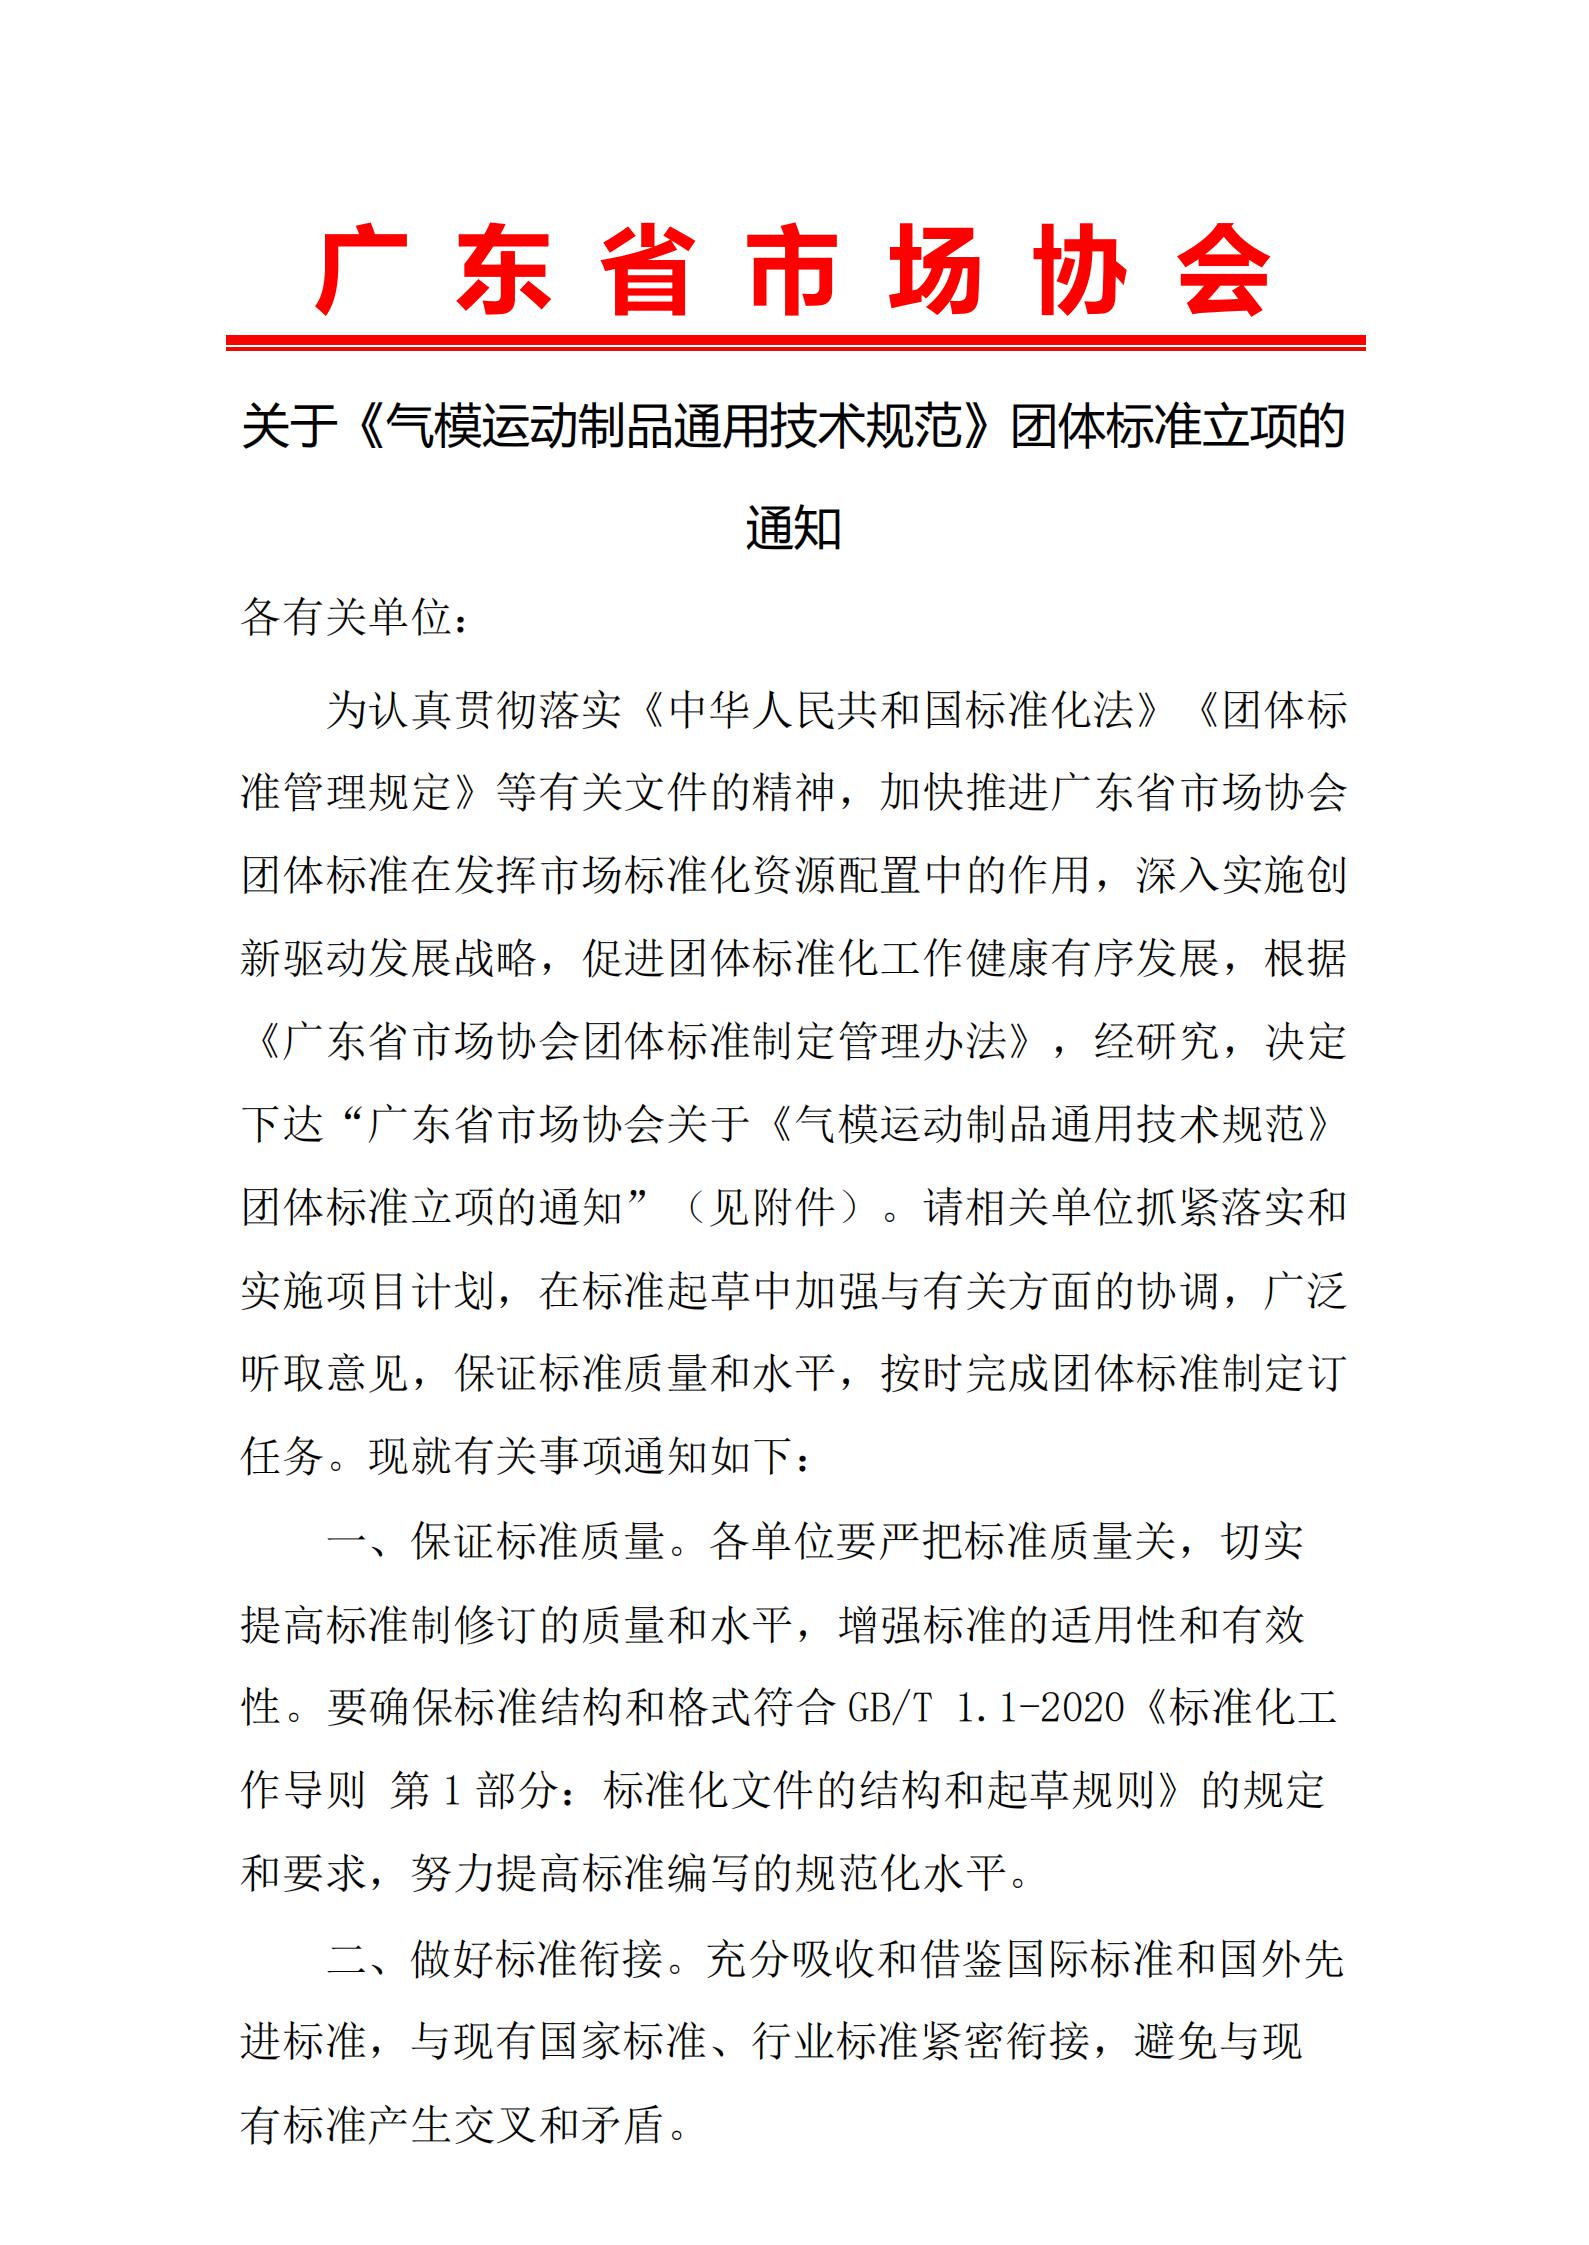 广东省市场协会关于《气模运动制品通用技术规范》团体标准立项的通知20210830 1.jpg